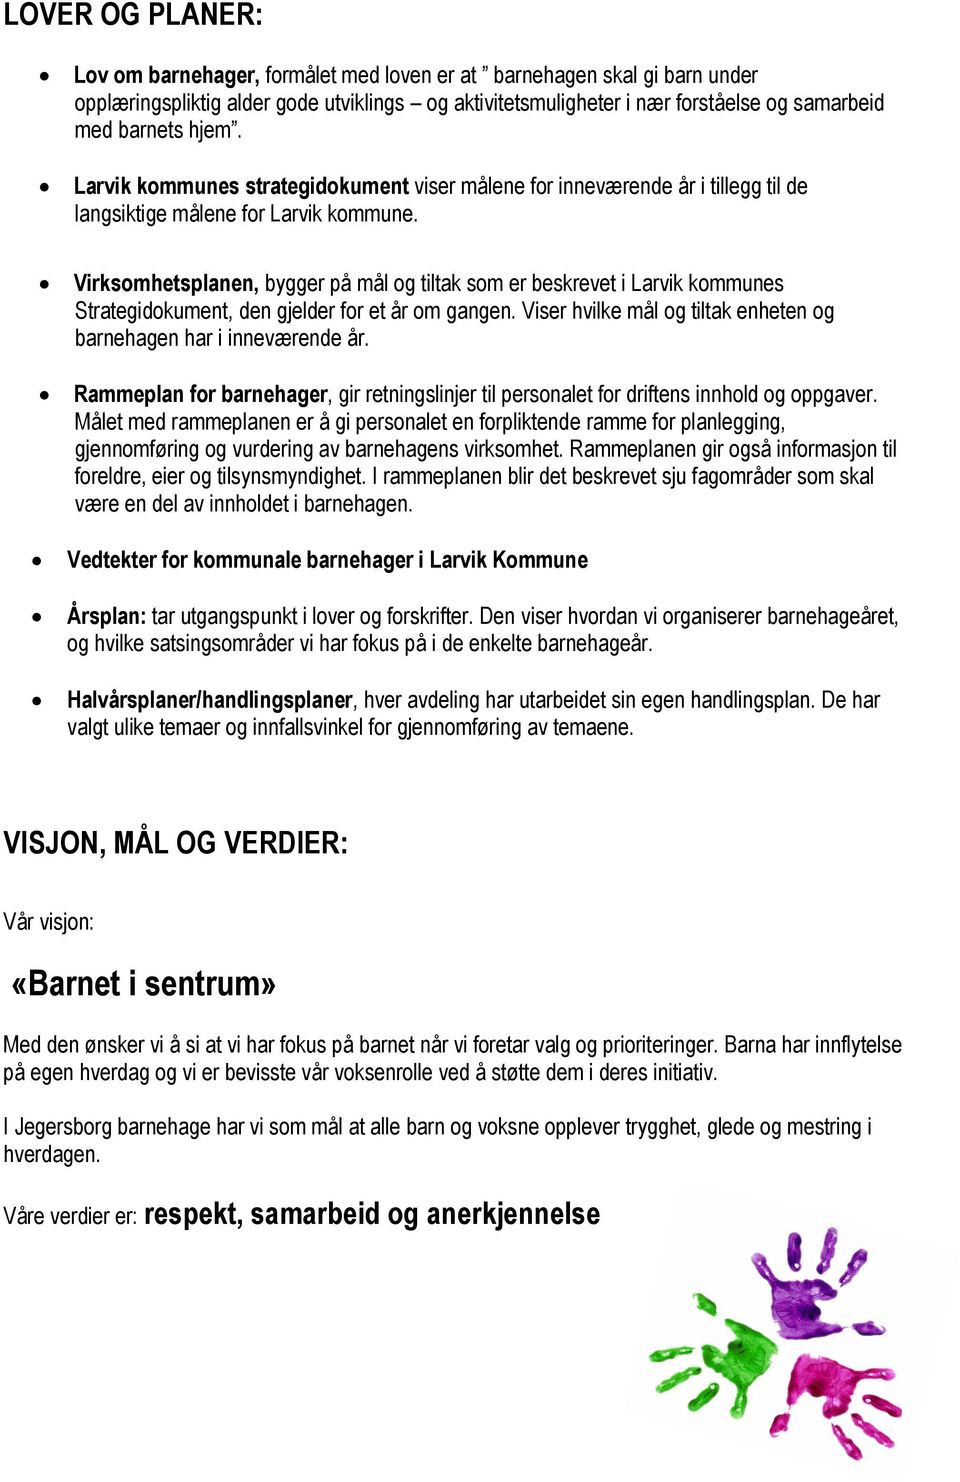 Virksomhetsplanen, bygger på mål og tiltak som er beskrevet i Larvik kommunes Strategidokument, den gjelder for et år om gangen. Viser hvilke mål og tiltak enheten og barnehagen har i inneværende år.